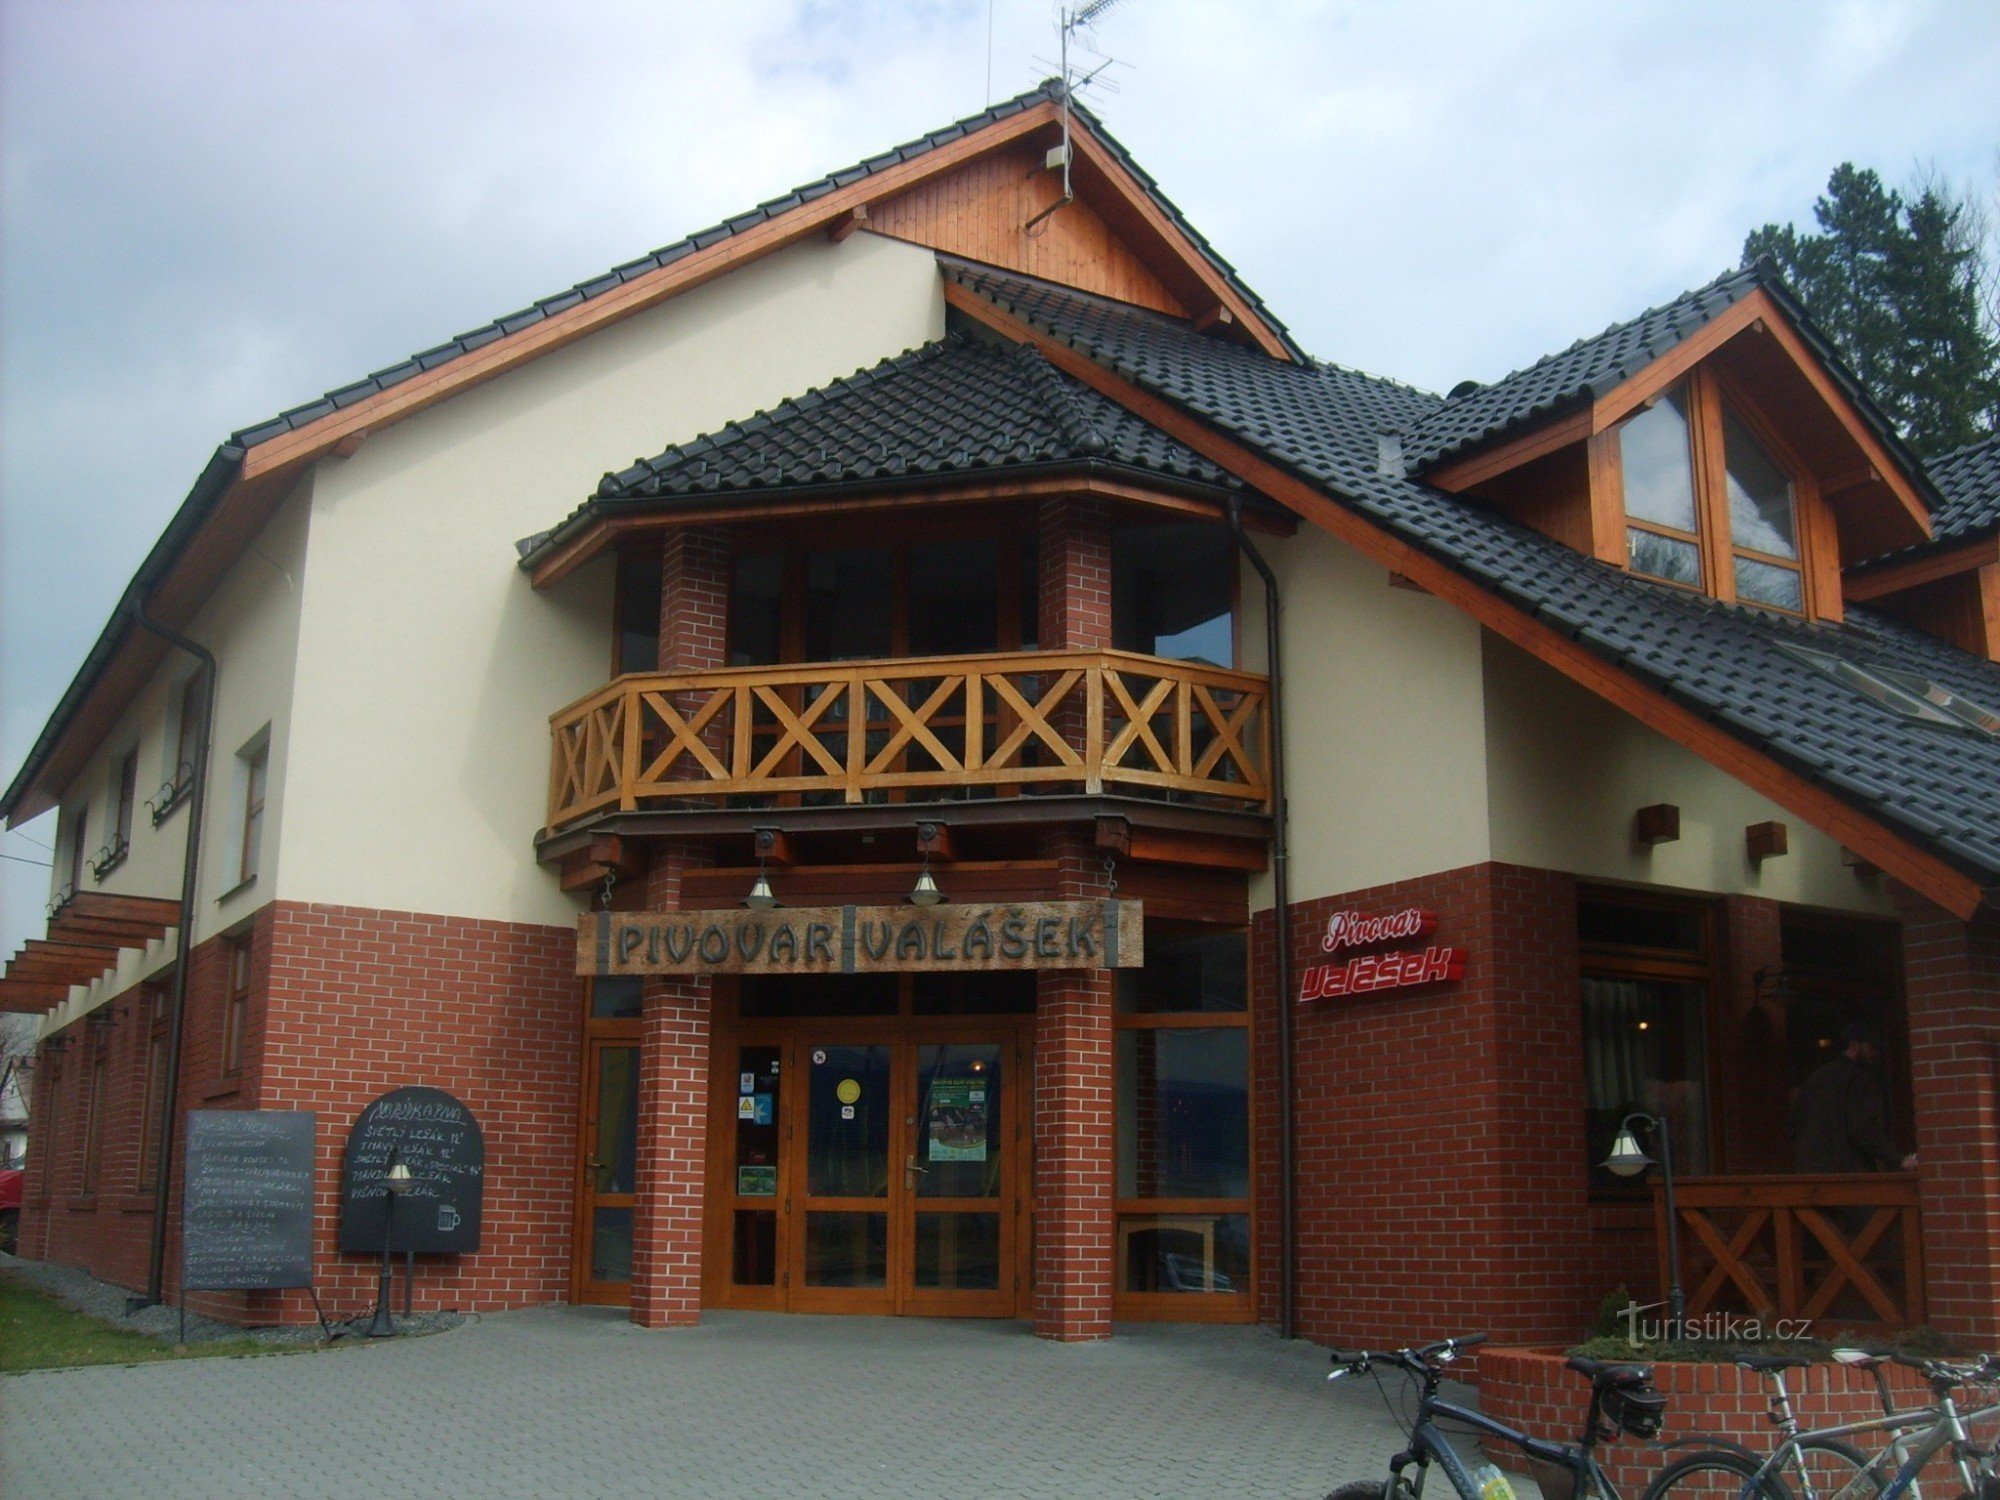 ヴァラーシェク家の地ビール醸造所